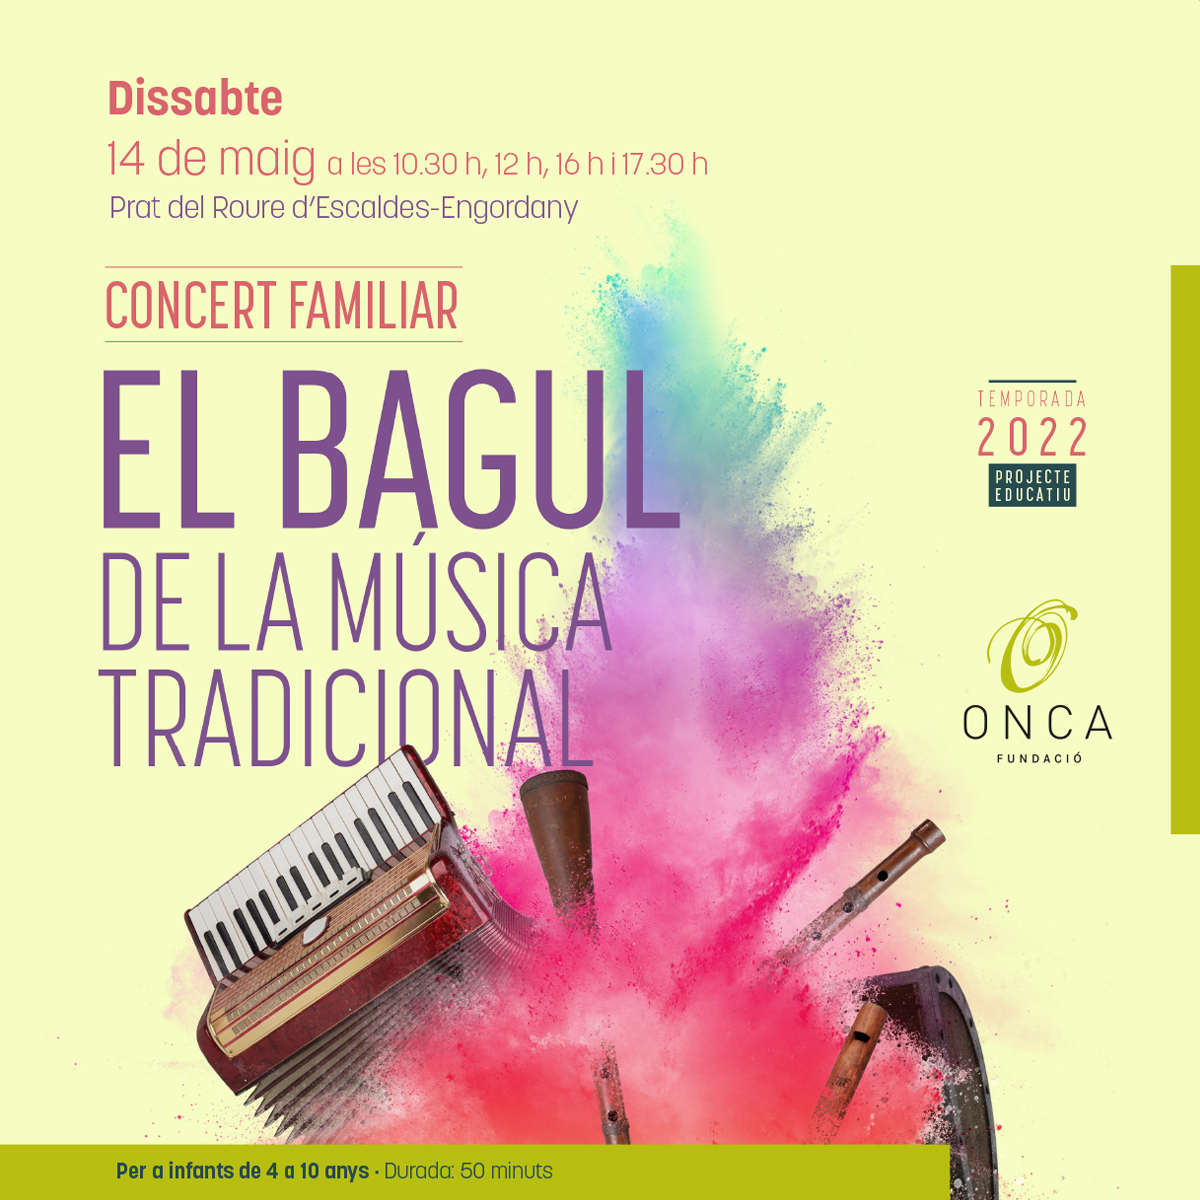 Concert familiar “El bagul de la música tradicional”